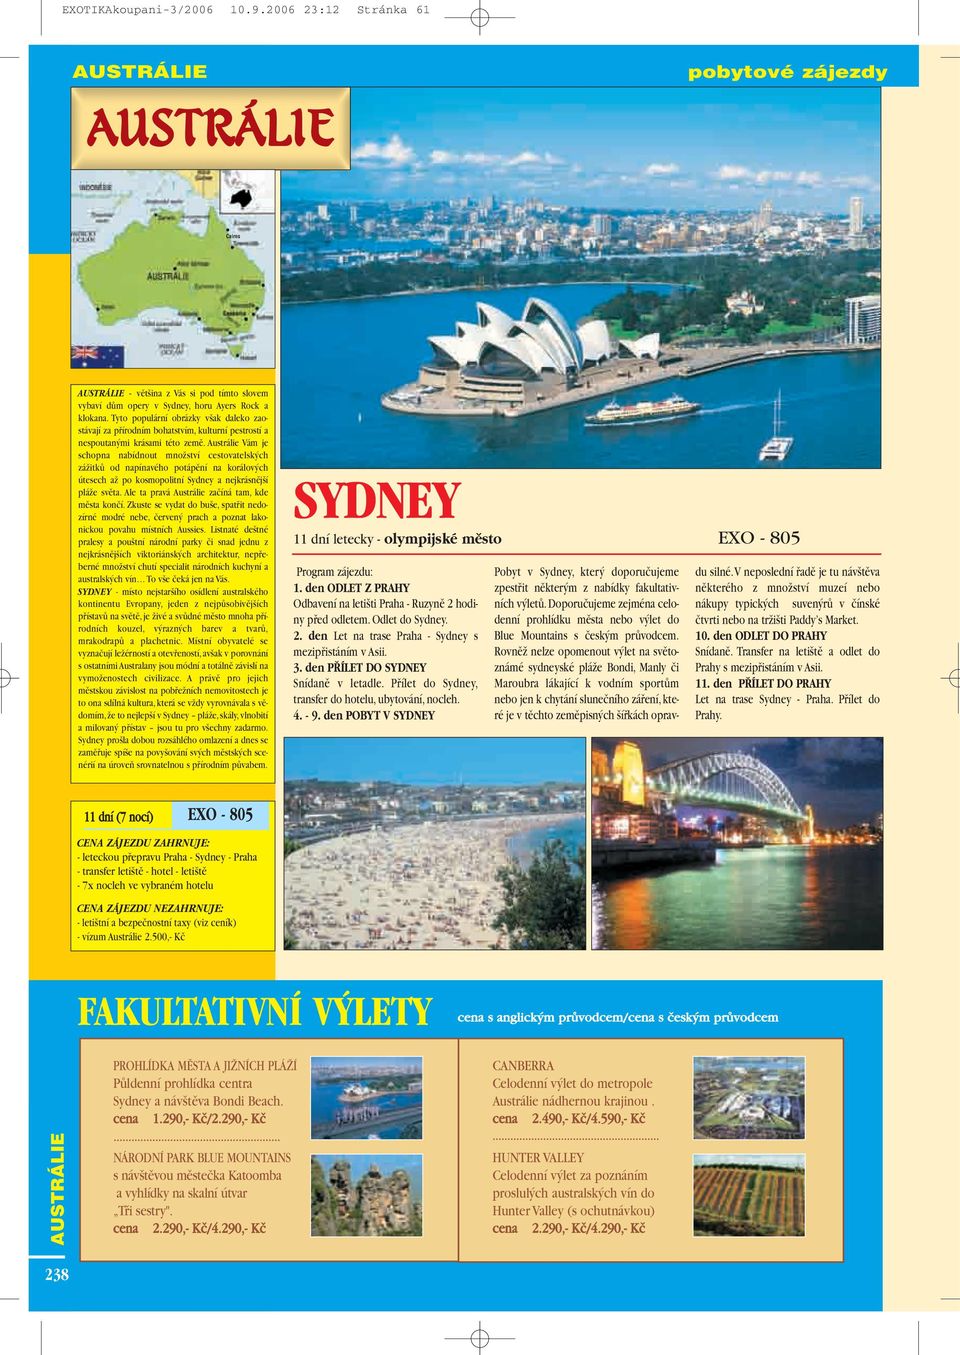 Austrálie Vám je schopna nabídnout mnoïství cestovatelsk ch záïitkû od napínavého potápûní na korálov ch útesech aï po kosmopolitní Sydney a nejkrásnûj í pláïe svûta.